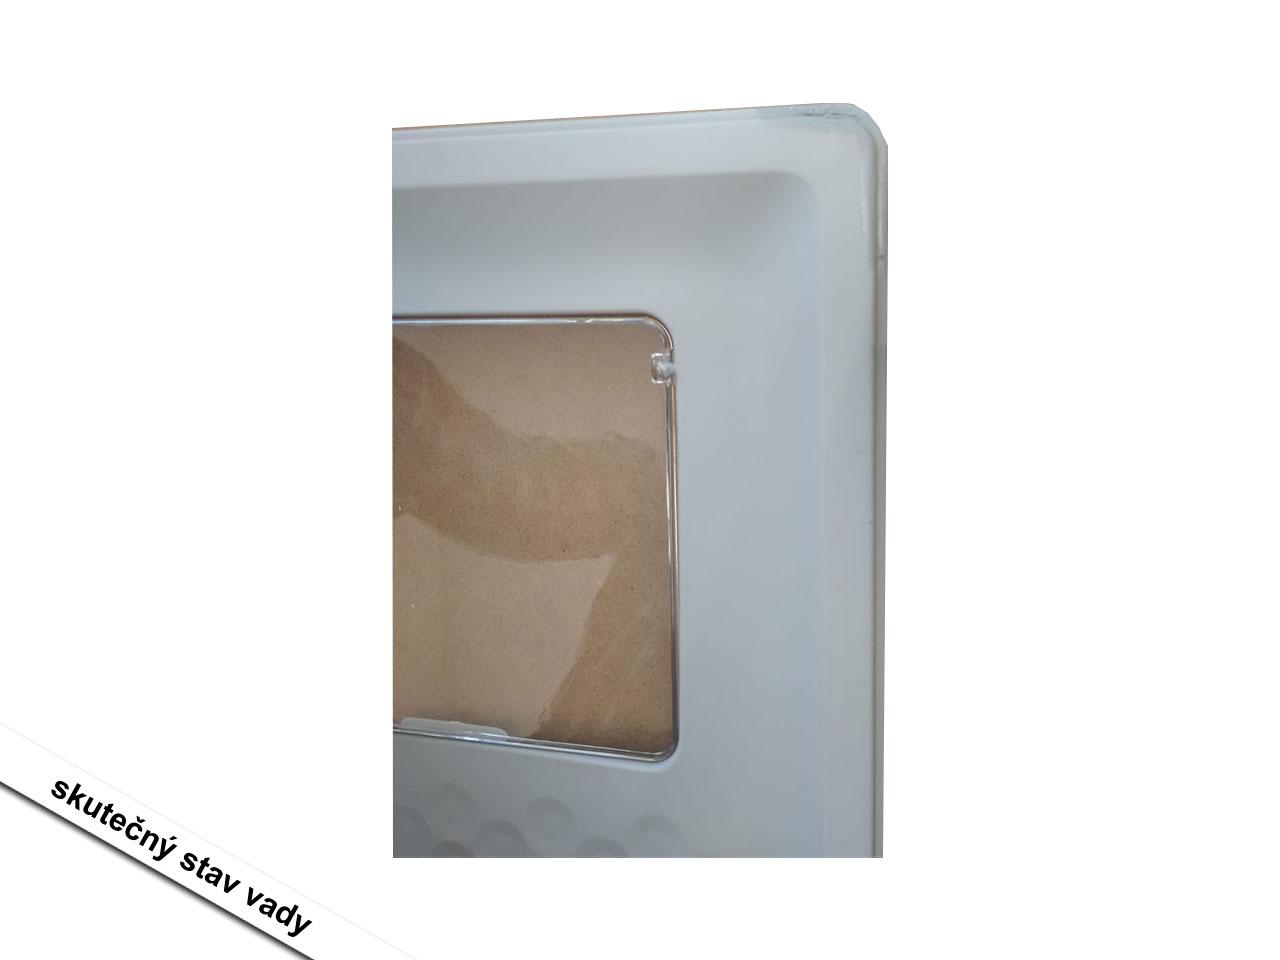 Toaleta pro kočky D31-061V00GY, odnímatelná základní přihrádka, včetně plastové lopatky, šedá